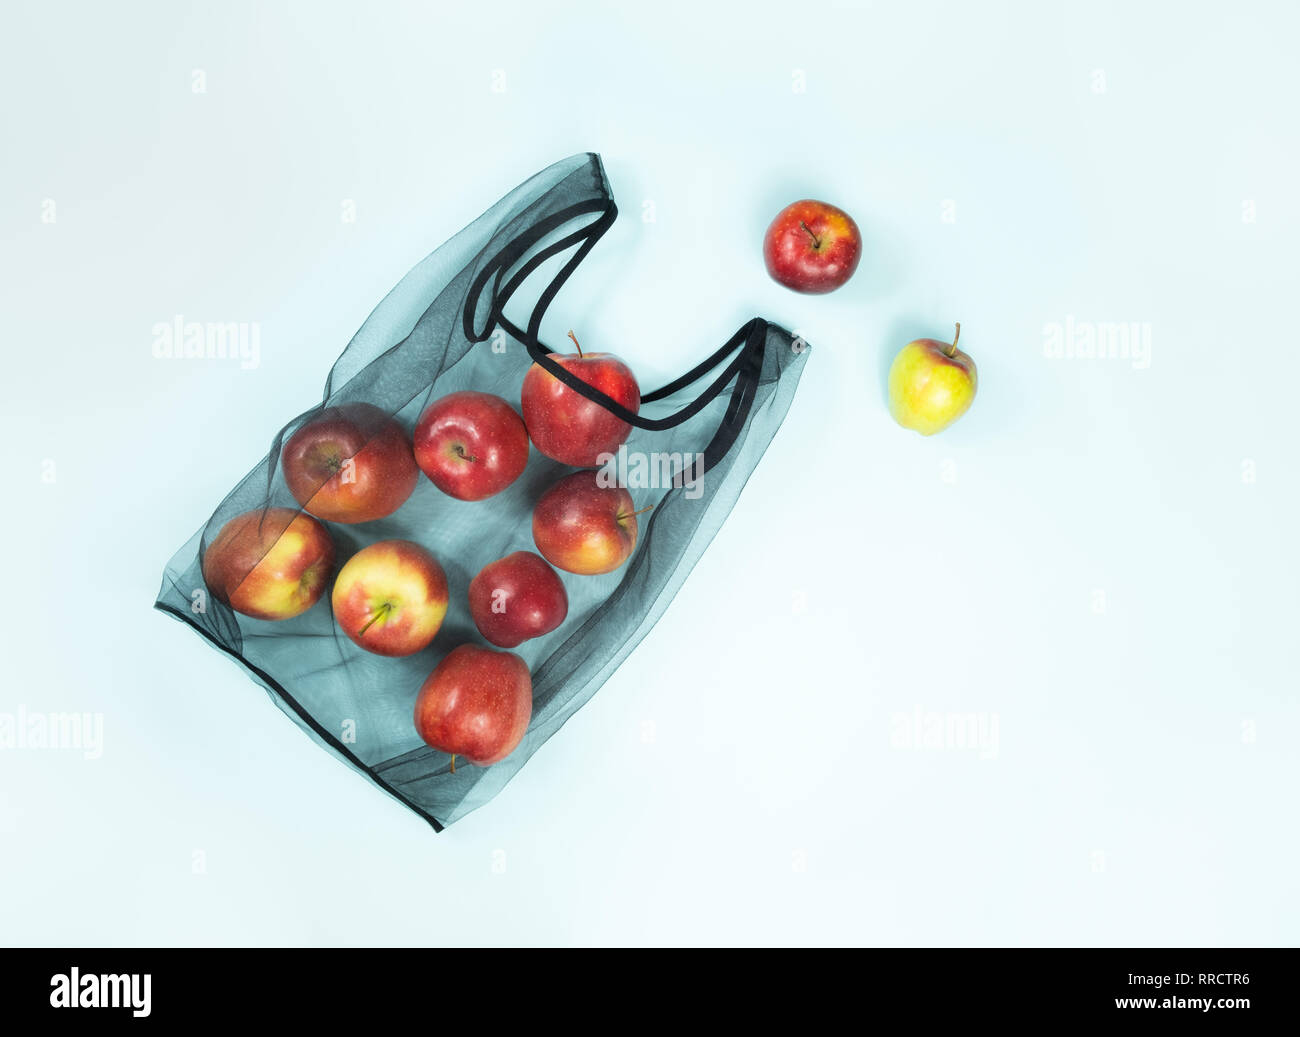 Vue de dessus de pommes dans un sac réutilisable, string. Concept d'emballage écologique durable : faire les courses avec un sac multi-usage pour réduire footp écologique Banque D'Images